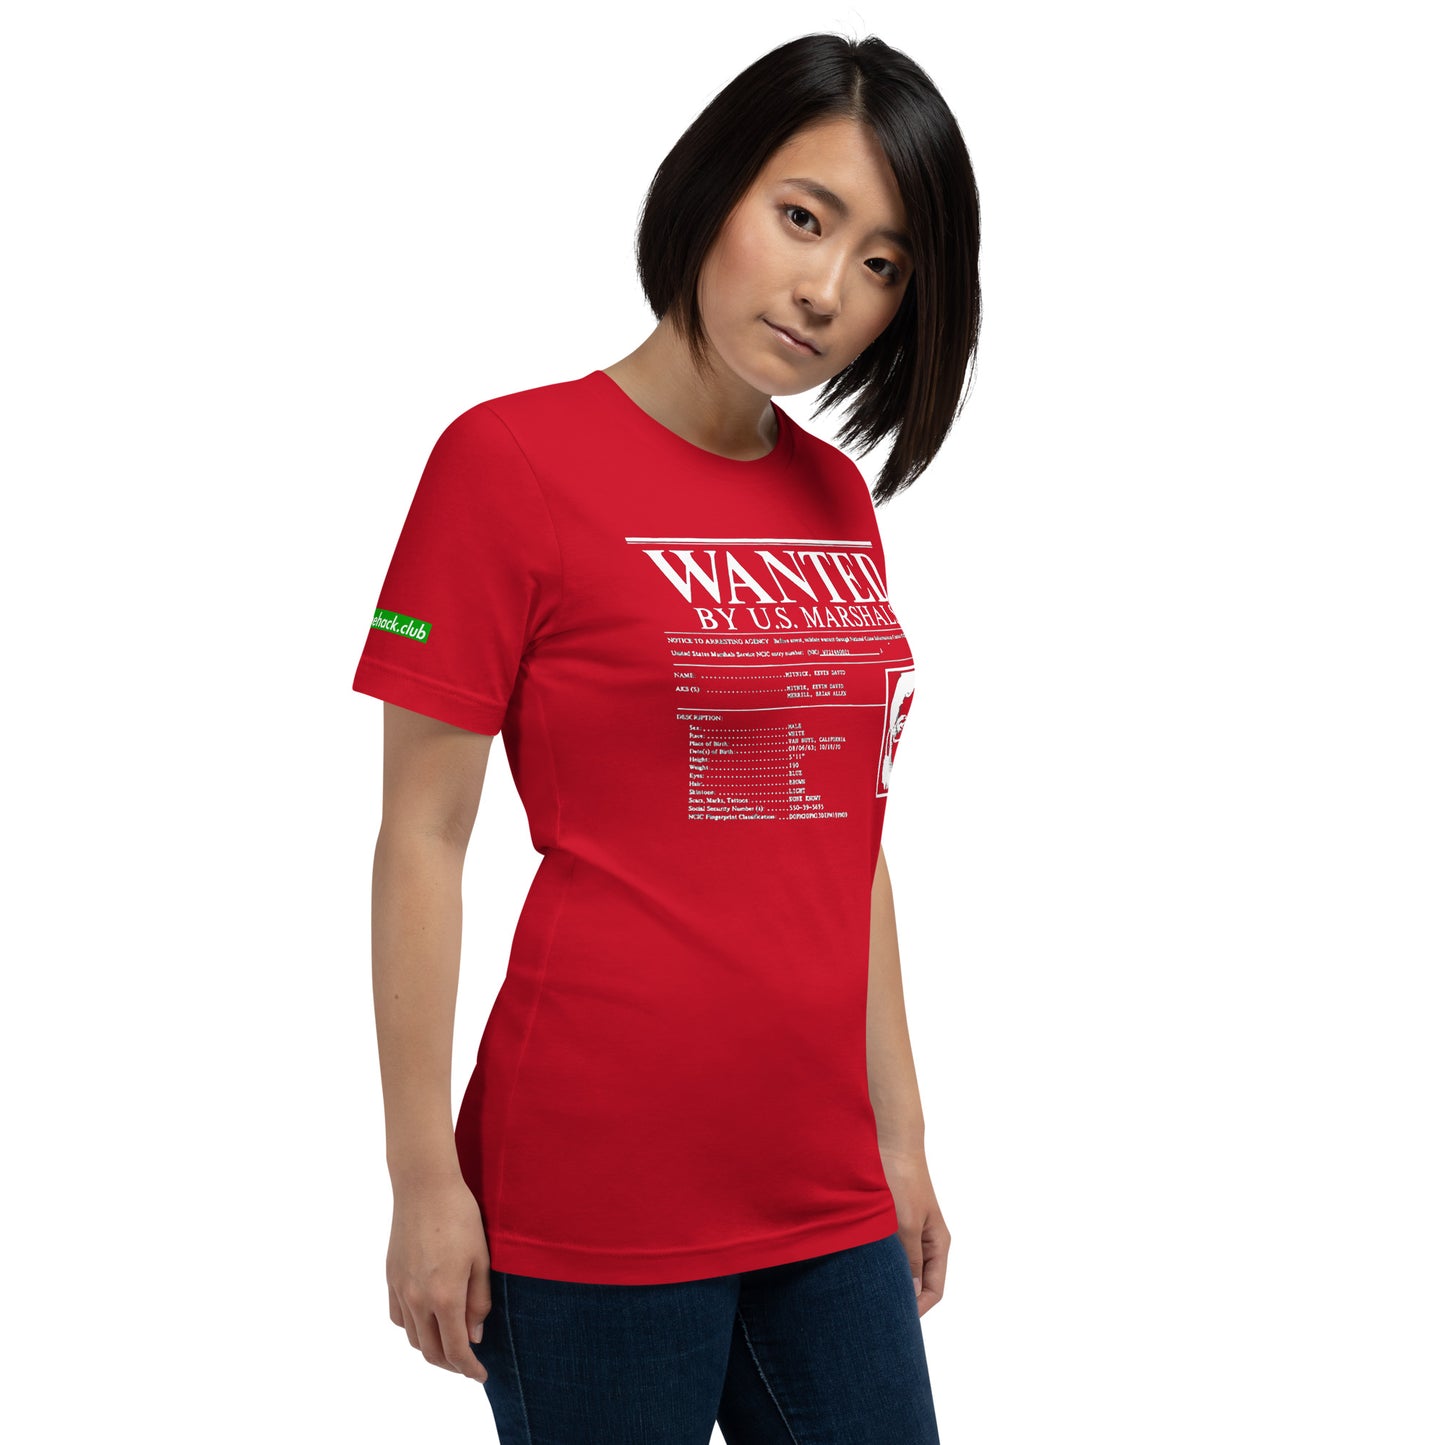 Kevin Mitnicks beliebtestes Foto-Unisex-T-Shirt